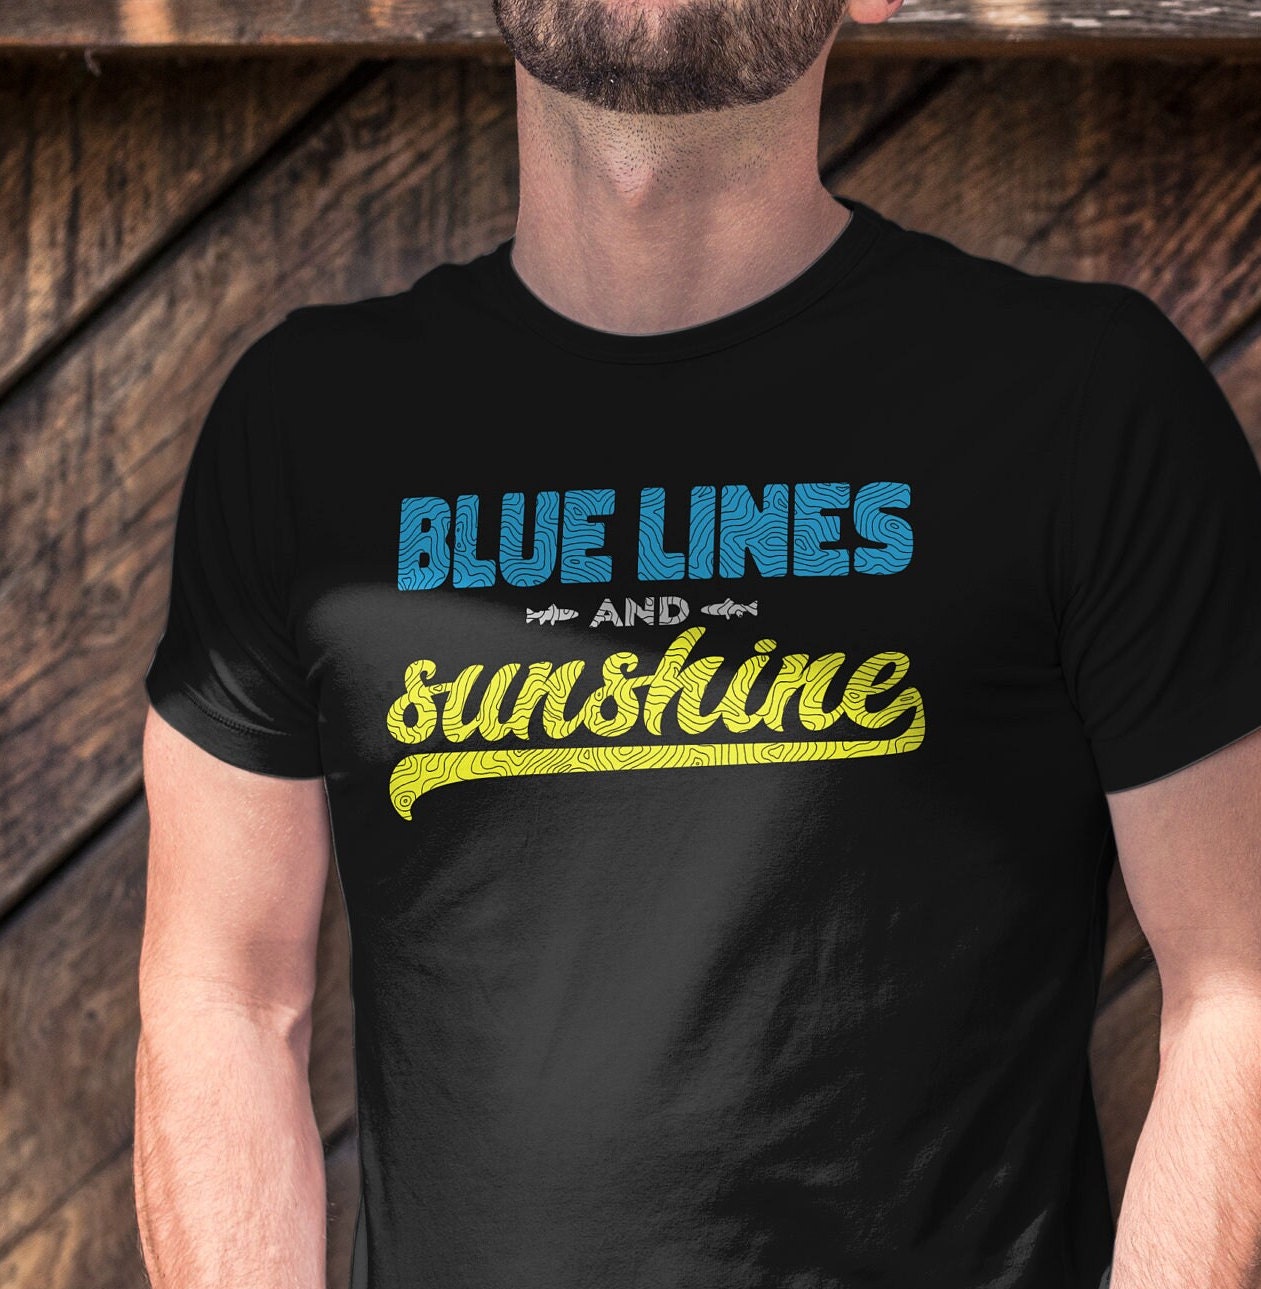 Blue lines shirt, blue lining shirt, blue lines t shirt, fly fishing, fly  fishing shirt, fly fishing t shirt, fishing shirt, fishing t shirt